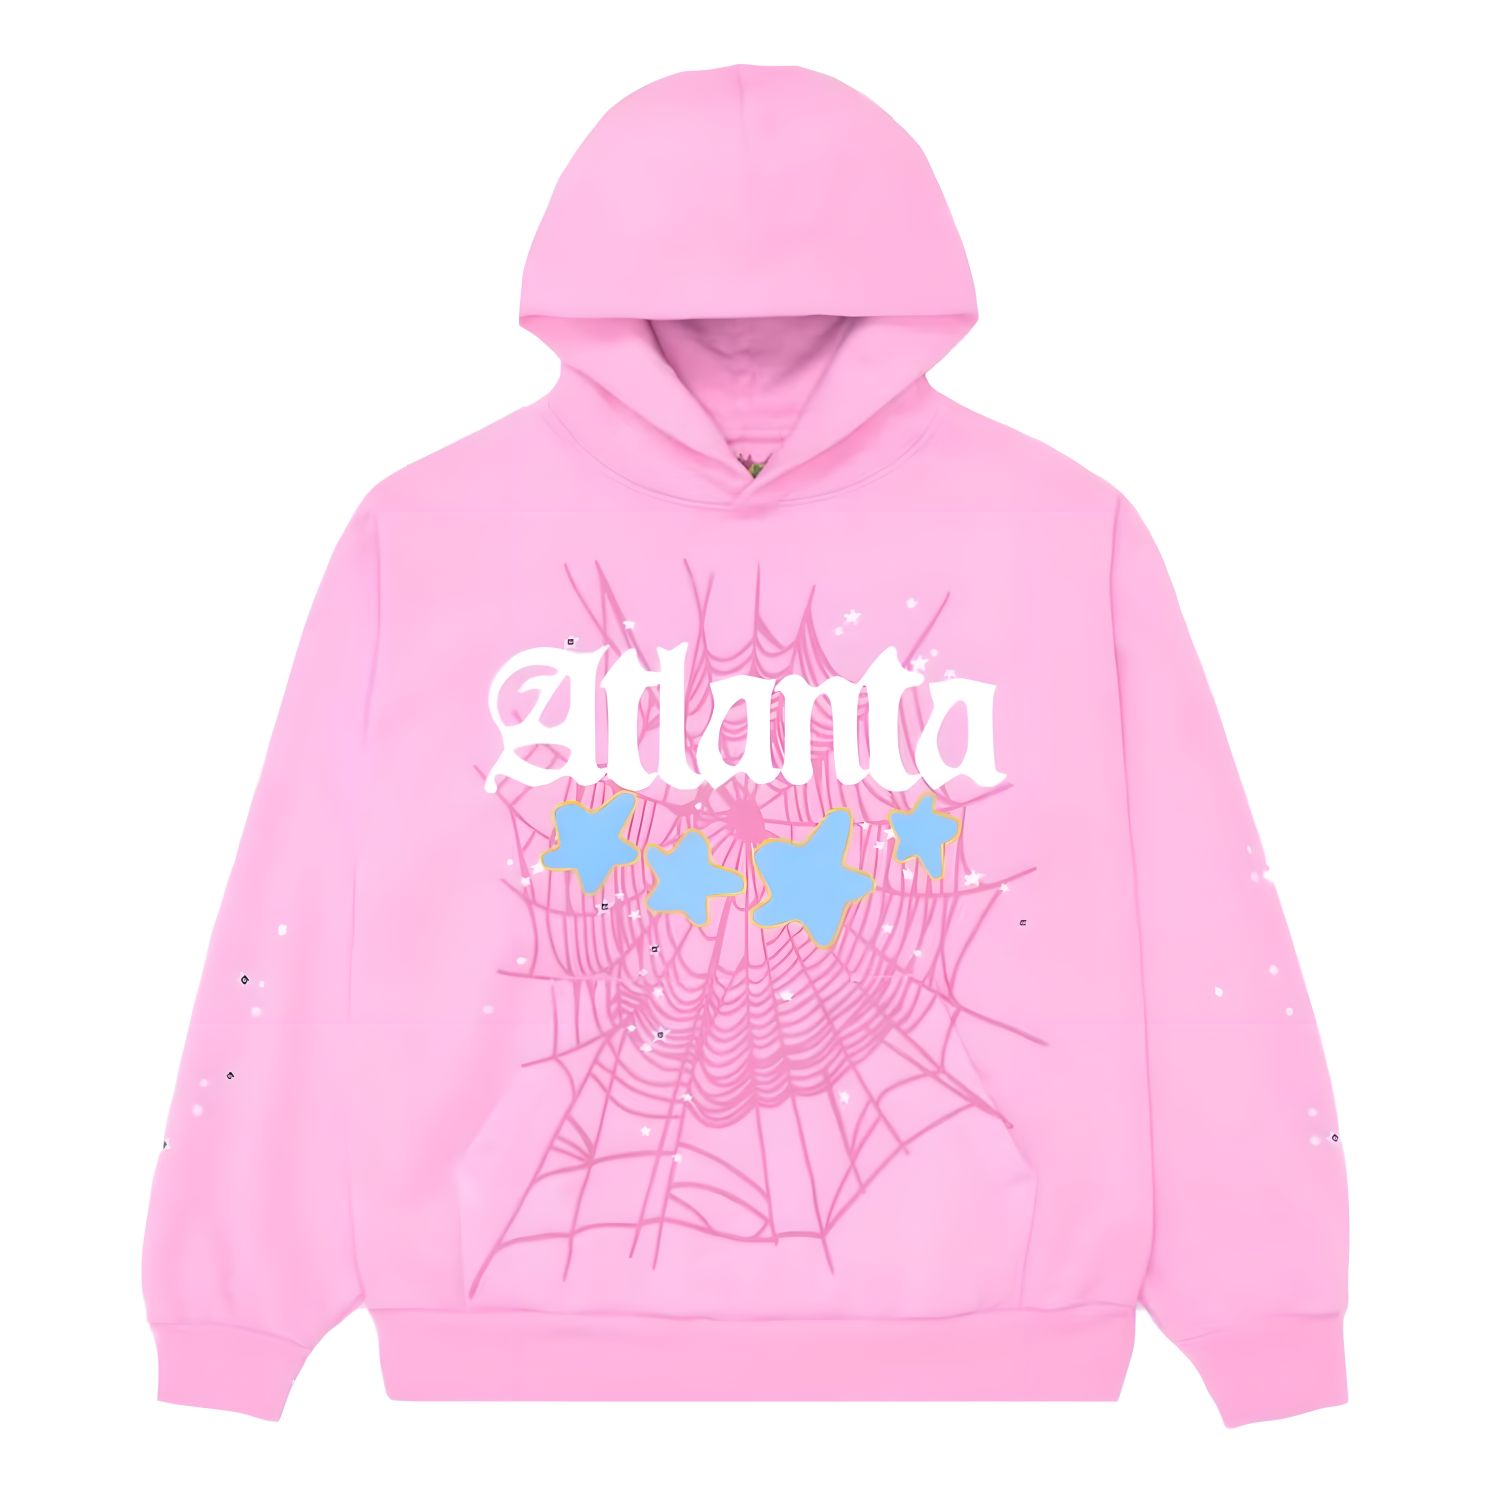 Spider Worldwide × Young Thug Sp5der Black Pink Hoodie 100% AUTHENTIC medium